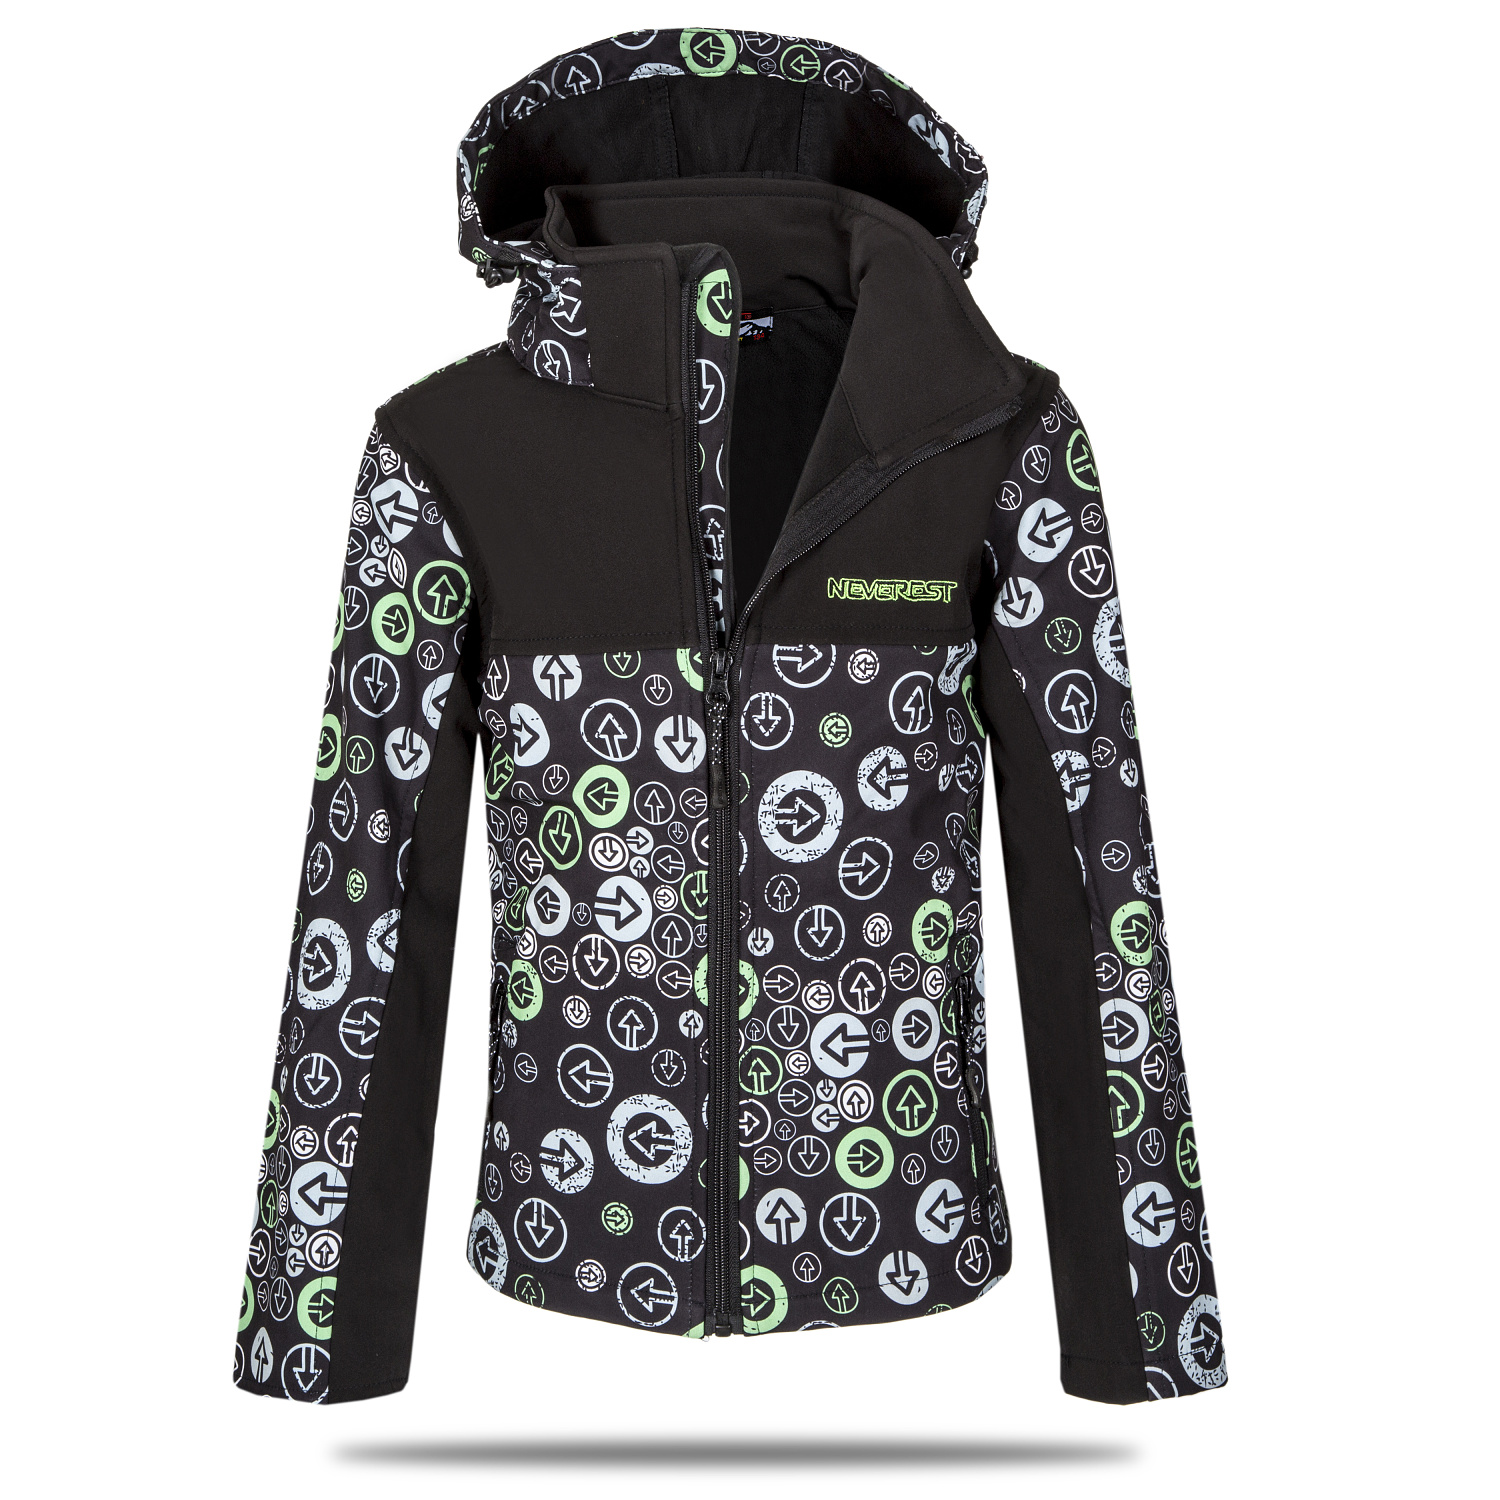 Chlapecká softshellová bunda - NEVEREST I-6296cc, černo-zelená Barva: Černá, Velikost: 116